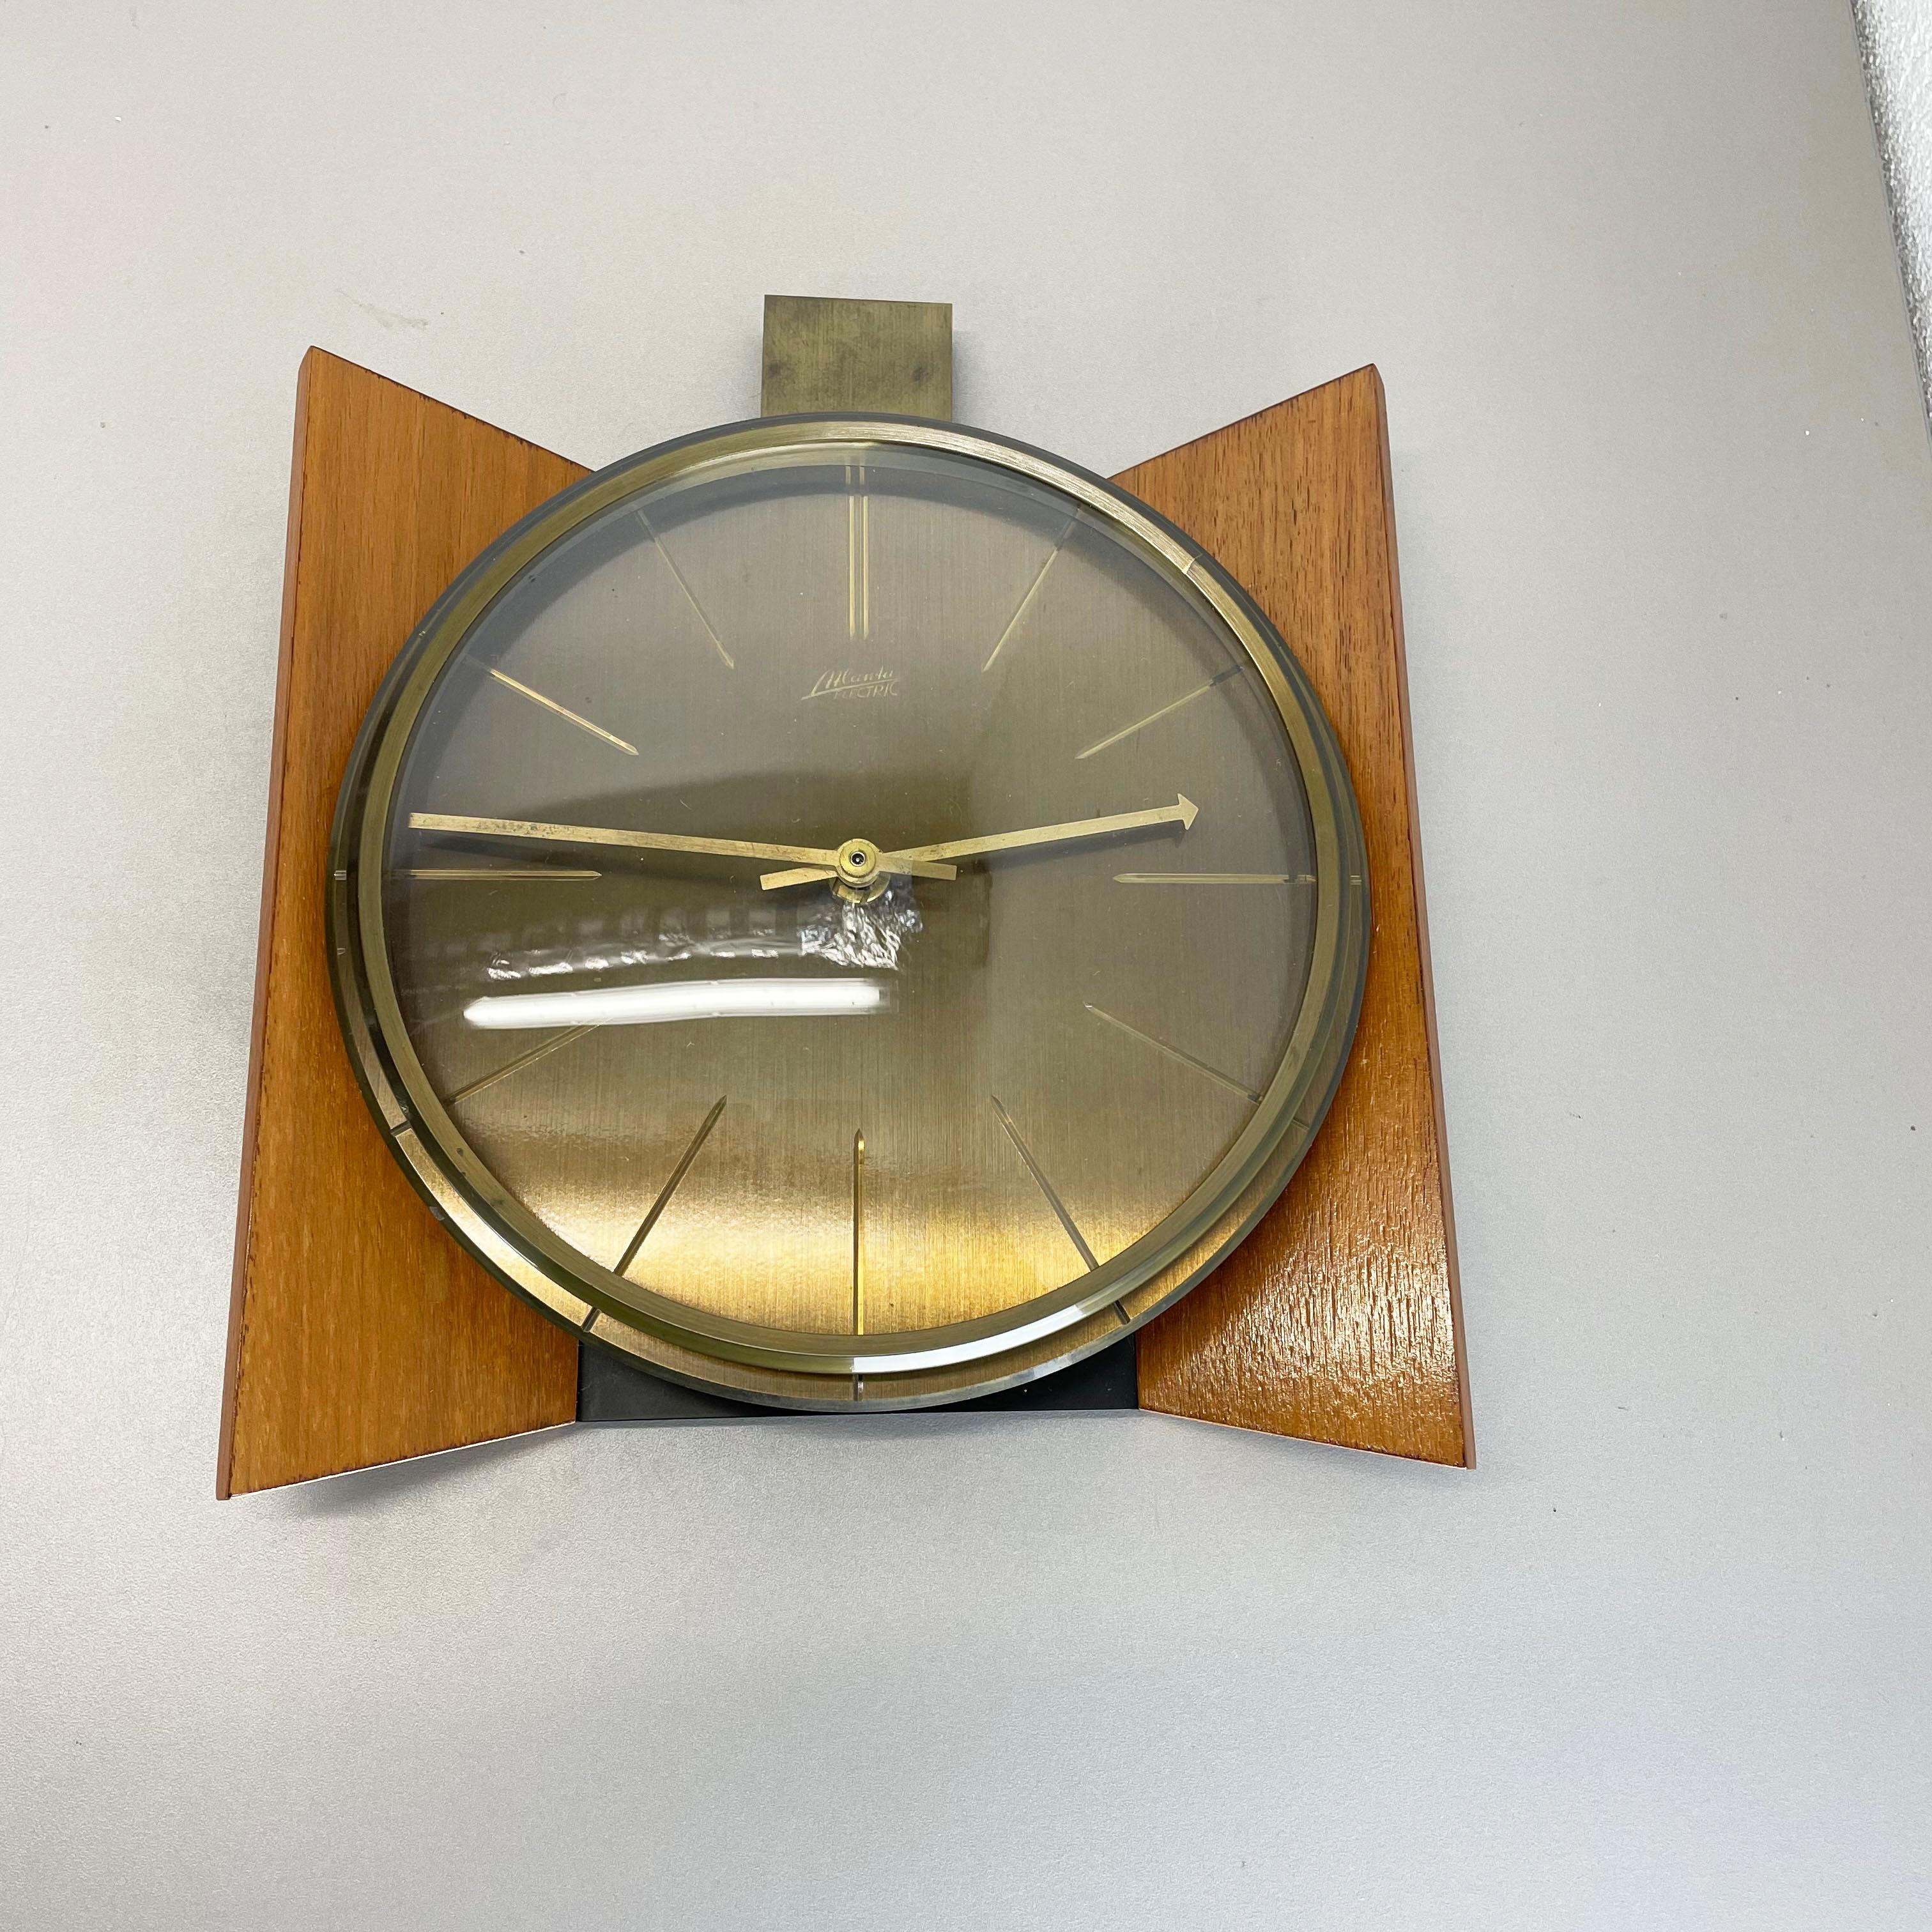 Article :

horloge murale



Origine :

Allemagne


Producteur :

Atlanta Electric, Allemagne


Âge :

1960s



Description :

Cette horloge murale vintage originale a été produite dans les années 1960 par le fabricant